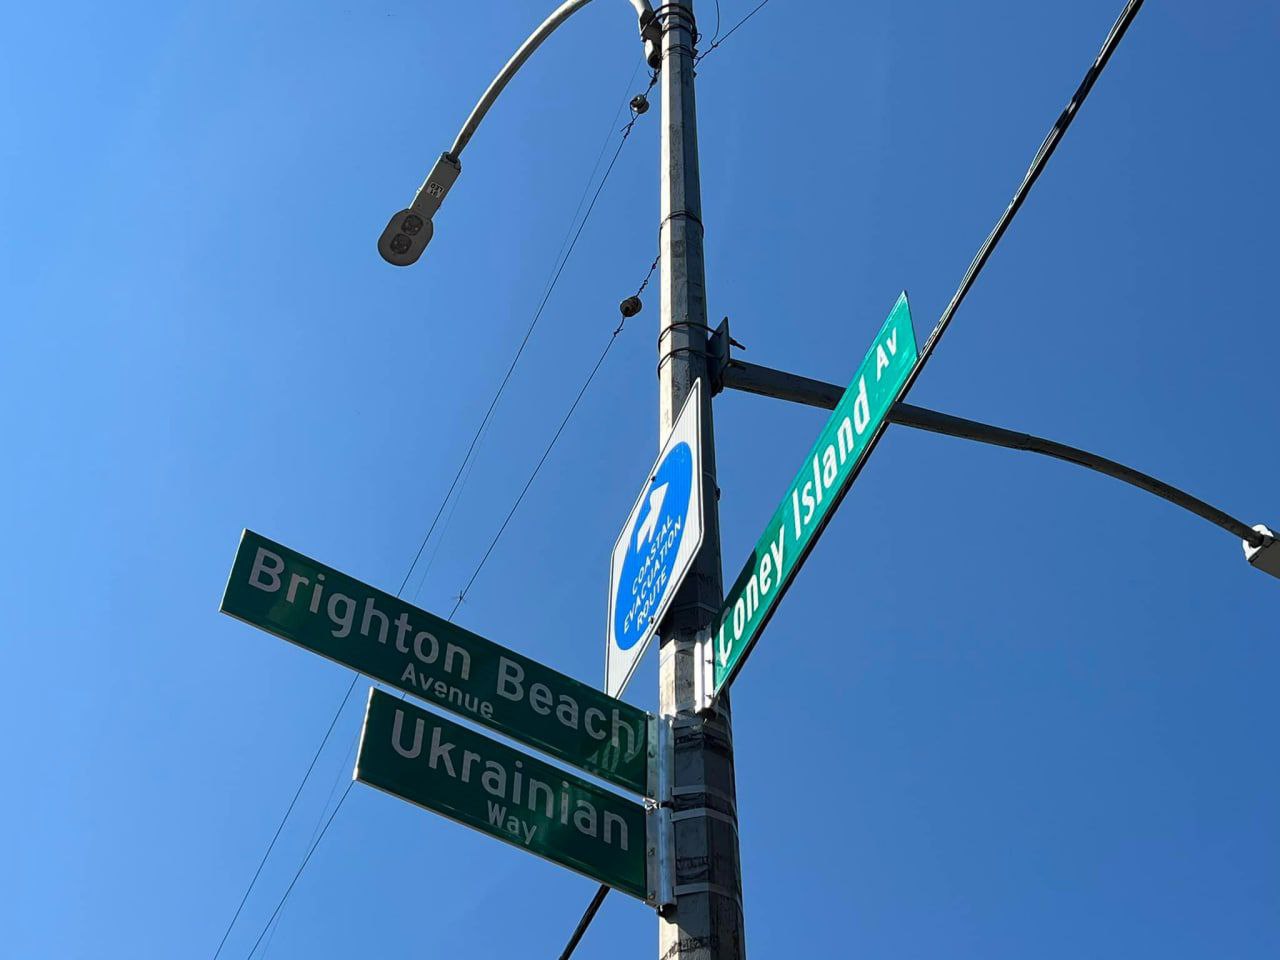 Перекресток в Нью-Йорке на Брайтон-Бич переименовали в в Ukrainian Way («Украинский путь») 💙💛